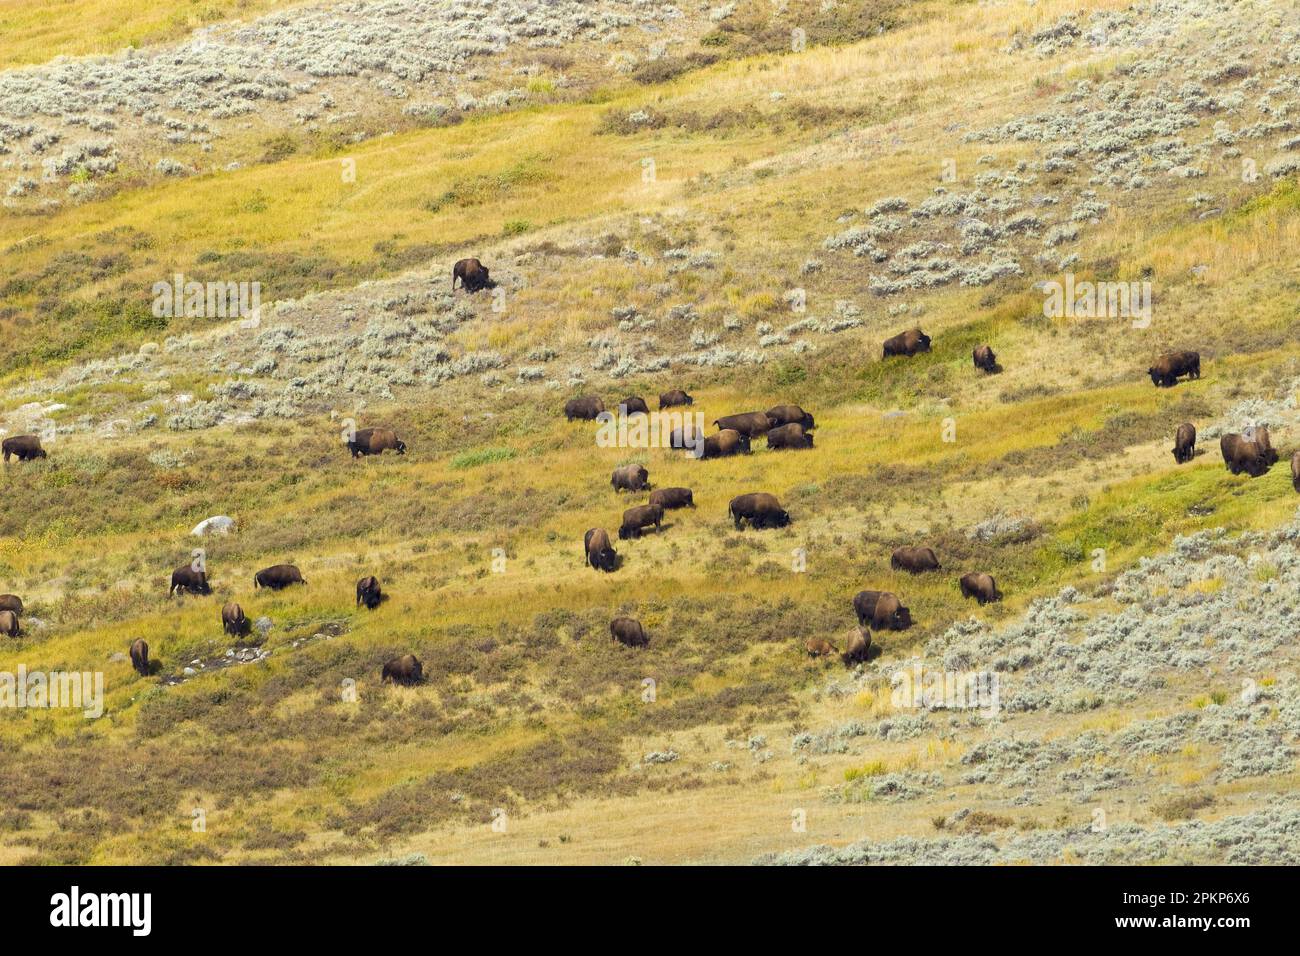 Nordamerikanische Bison (Bison Bison), ausgewachsene männliche, weibliche und Kälber, Herde, die auf einem hügeligen Lebensraum grast, Yellowstone N. P. Wyoming (U.) S. A. Stockfoto